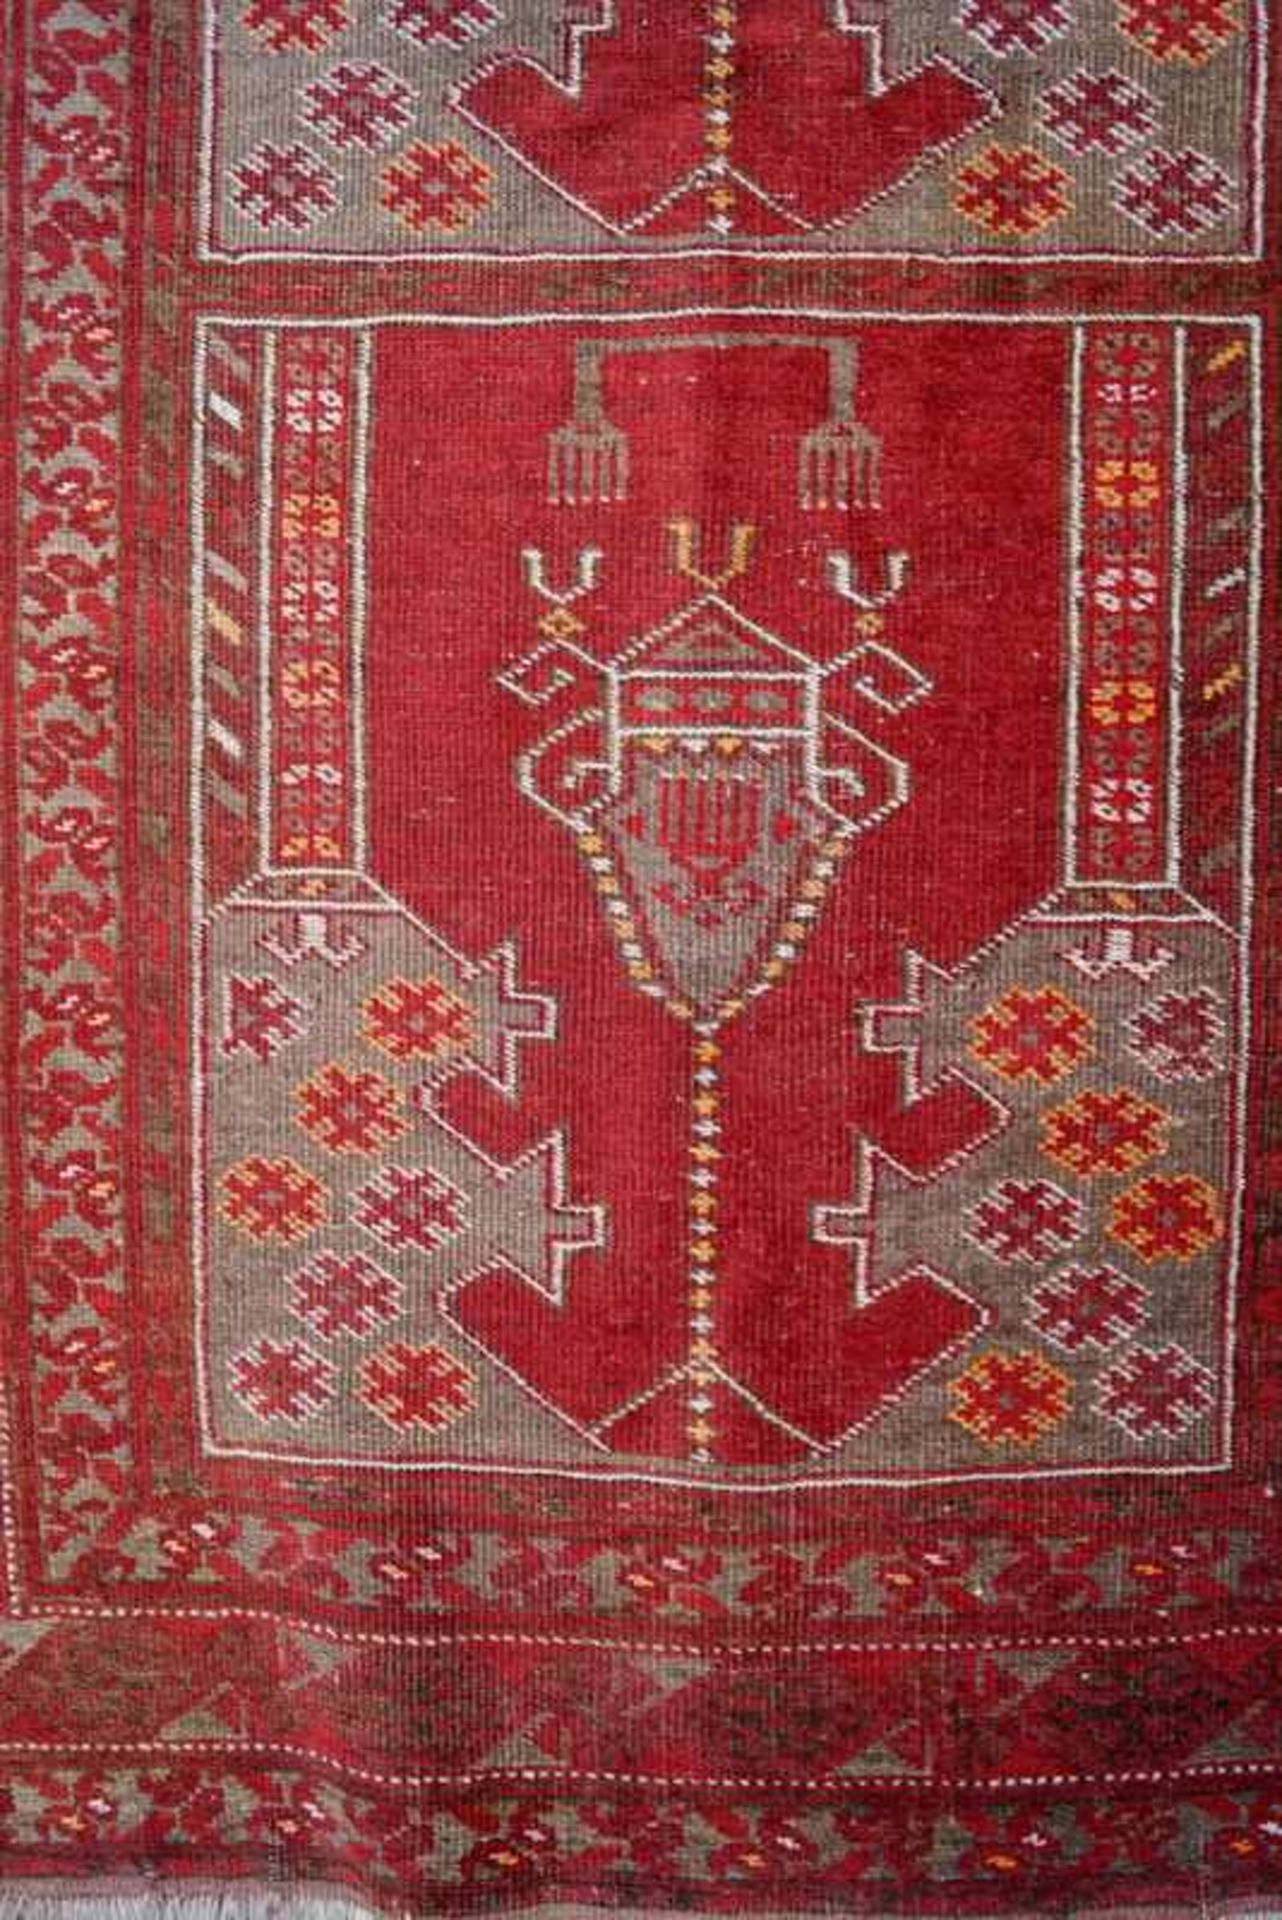 Antiker Türkischer Teppich mit Vasenmotiv - Bild 3 aus 6